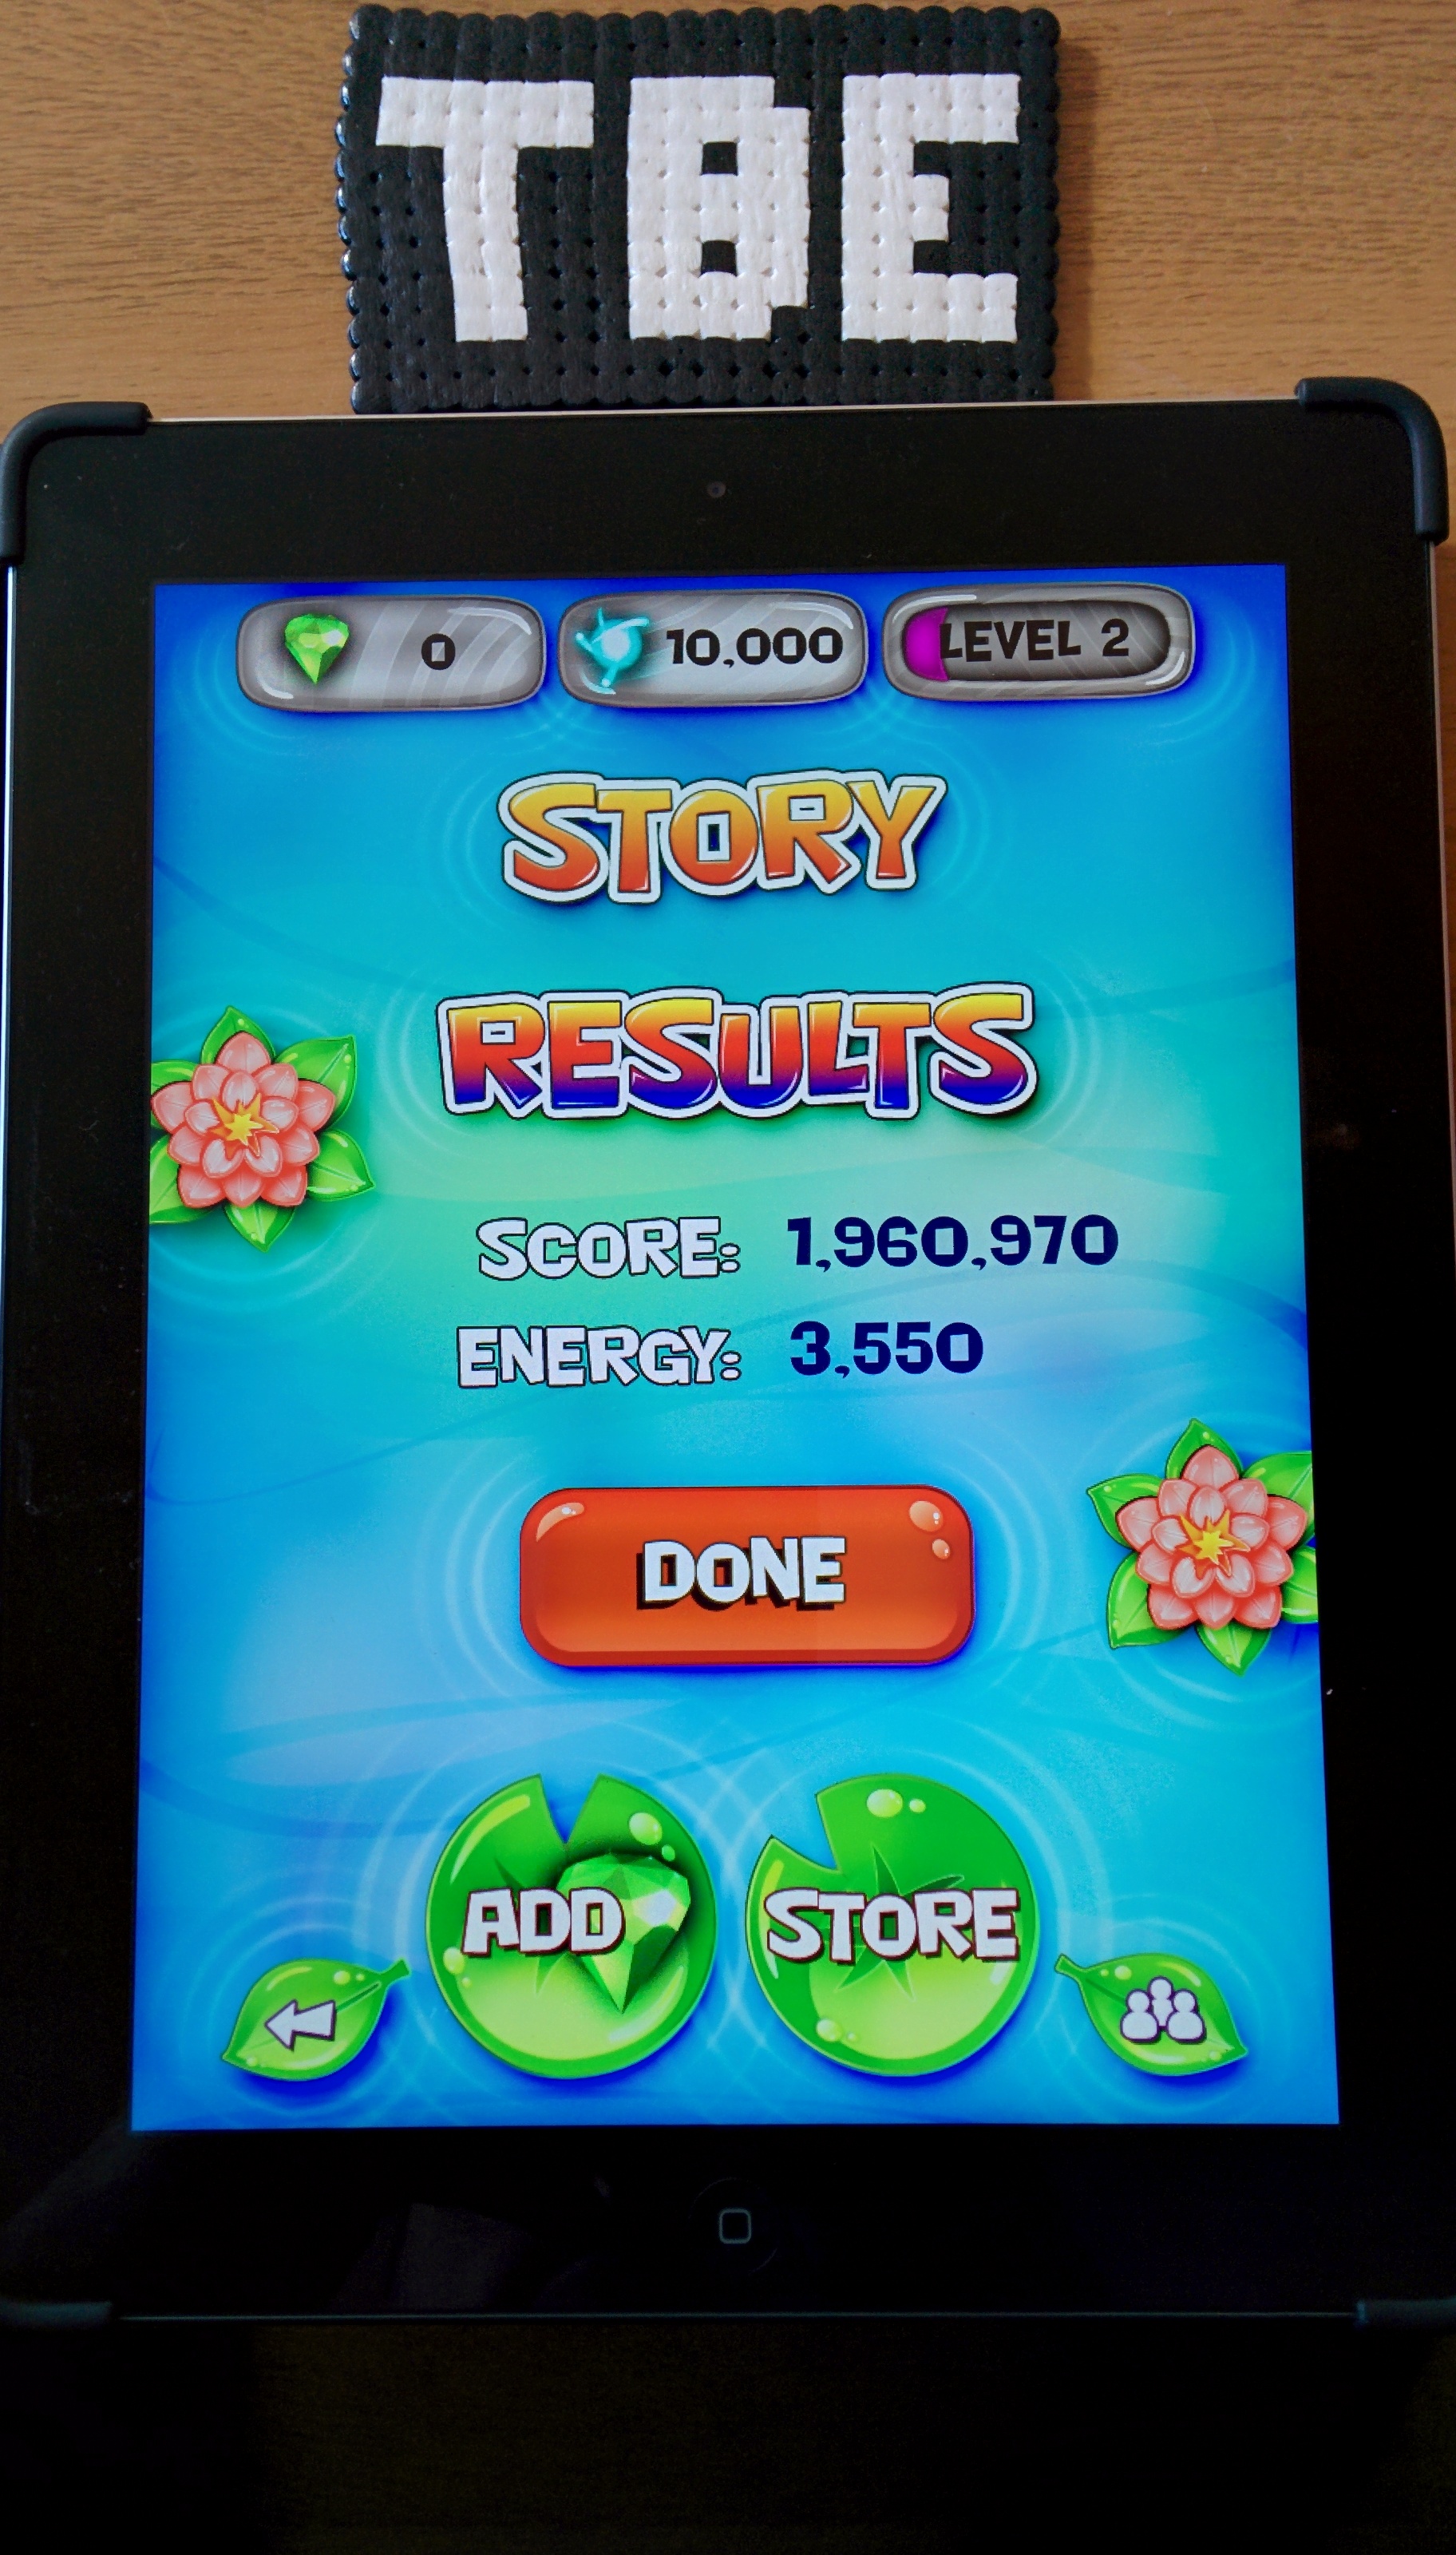 Sixx: Frogger Pinball: Story (iOS) 1,960,970 points on 2014-08-27 01:35:49